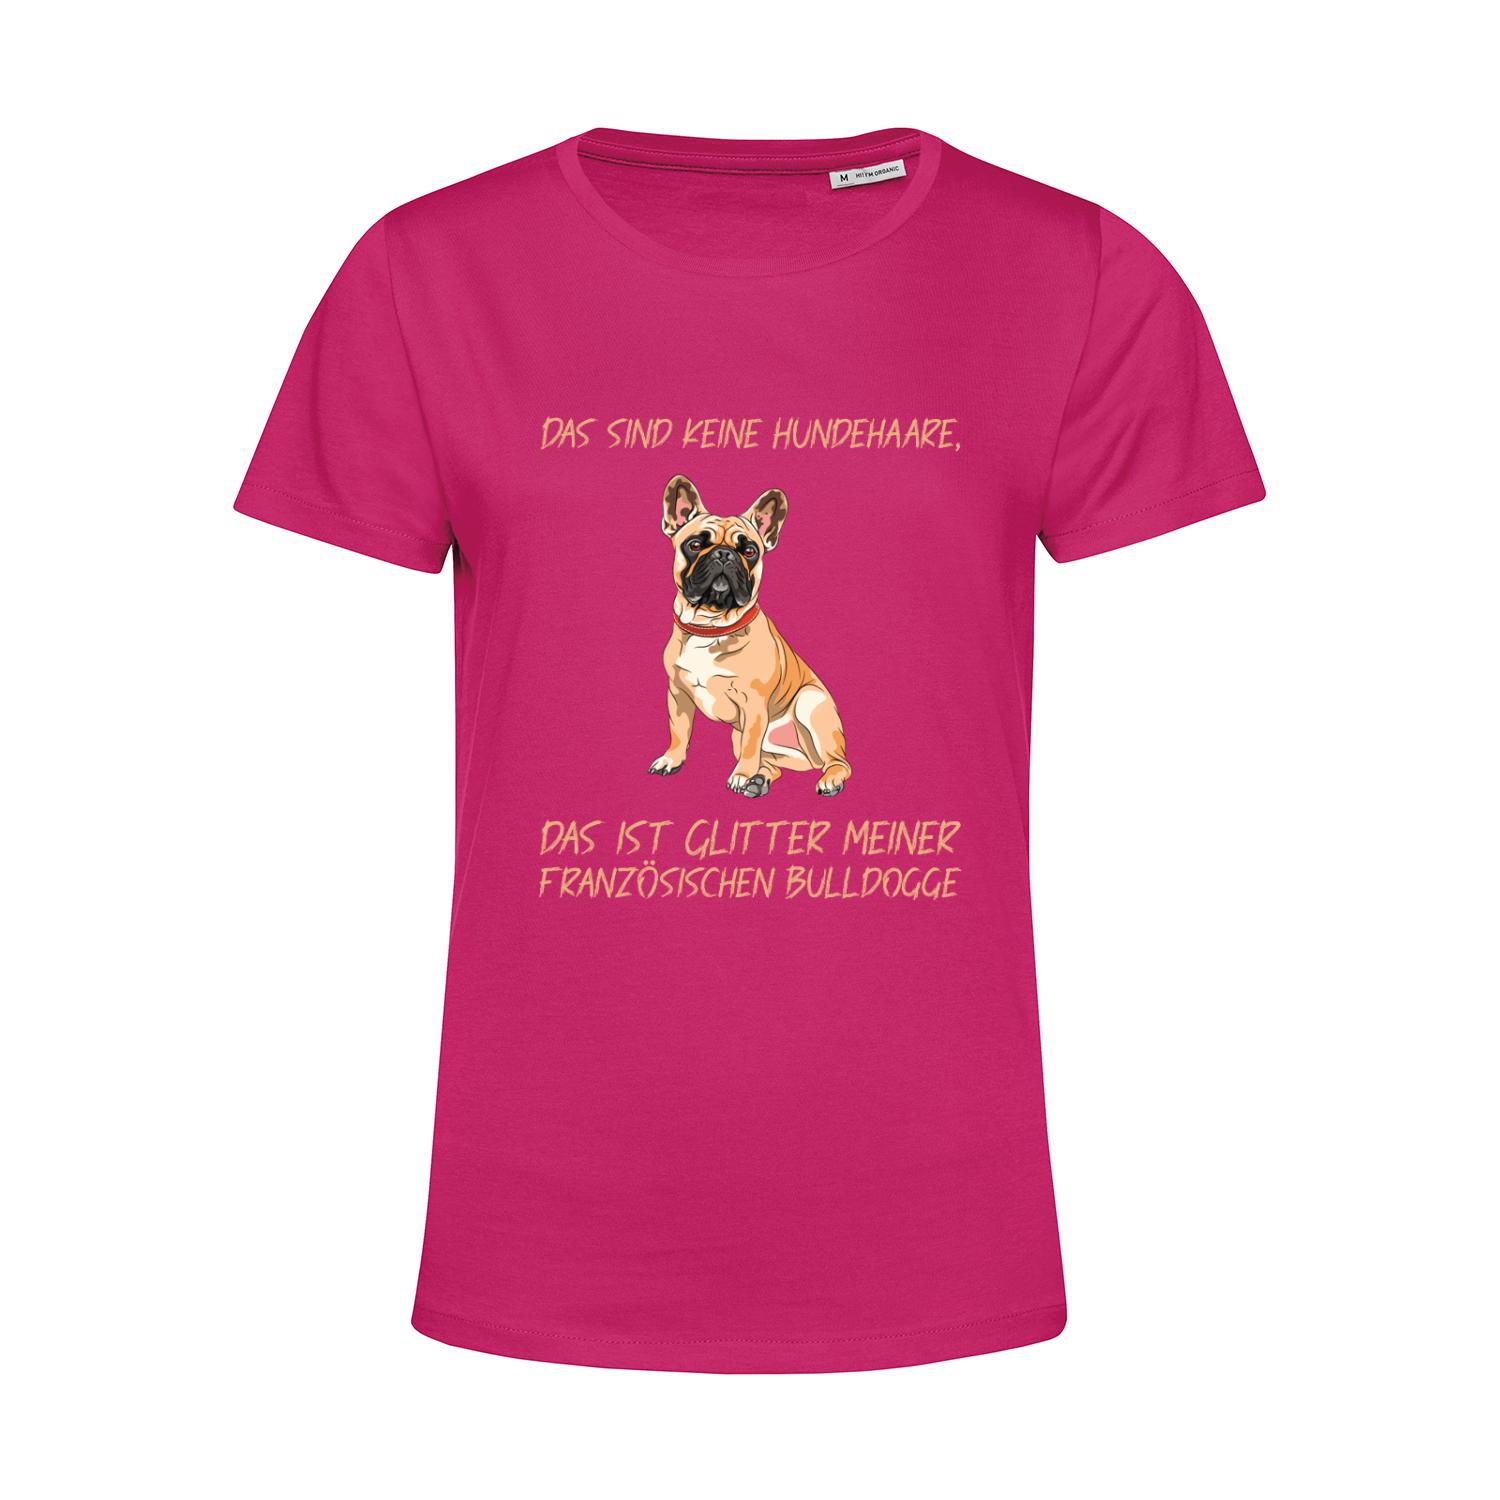 Nachhaltiges T-Shirt Damen Hunde - Französische Bulldogge - keine Hundehaare - Glitter